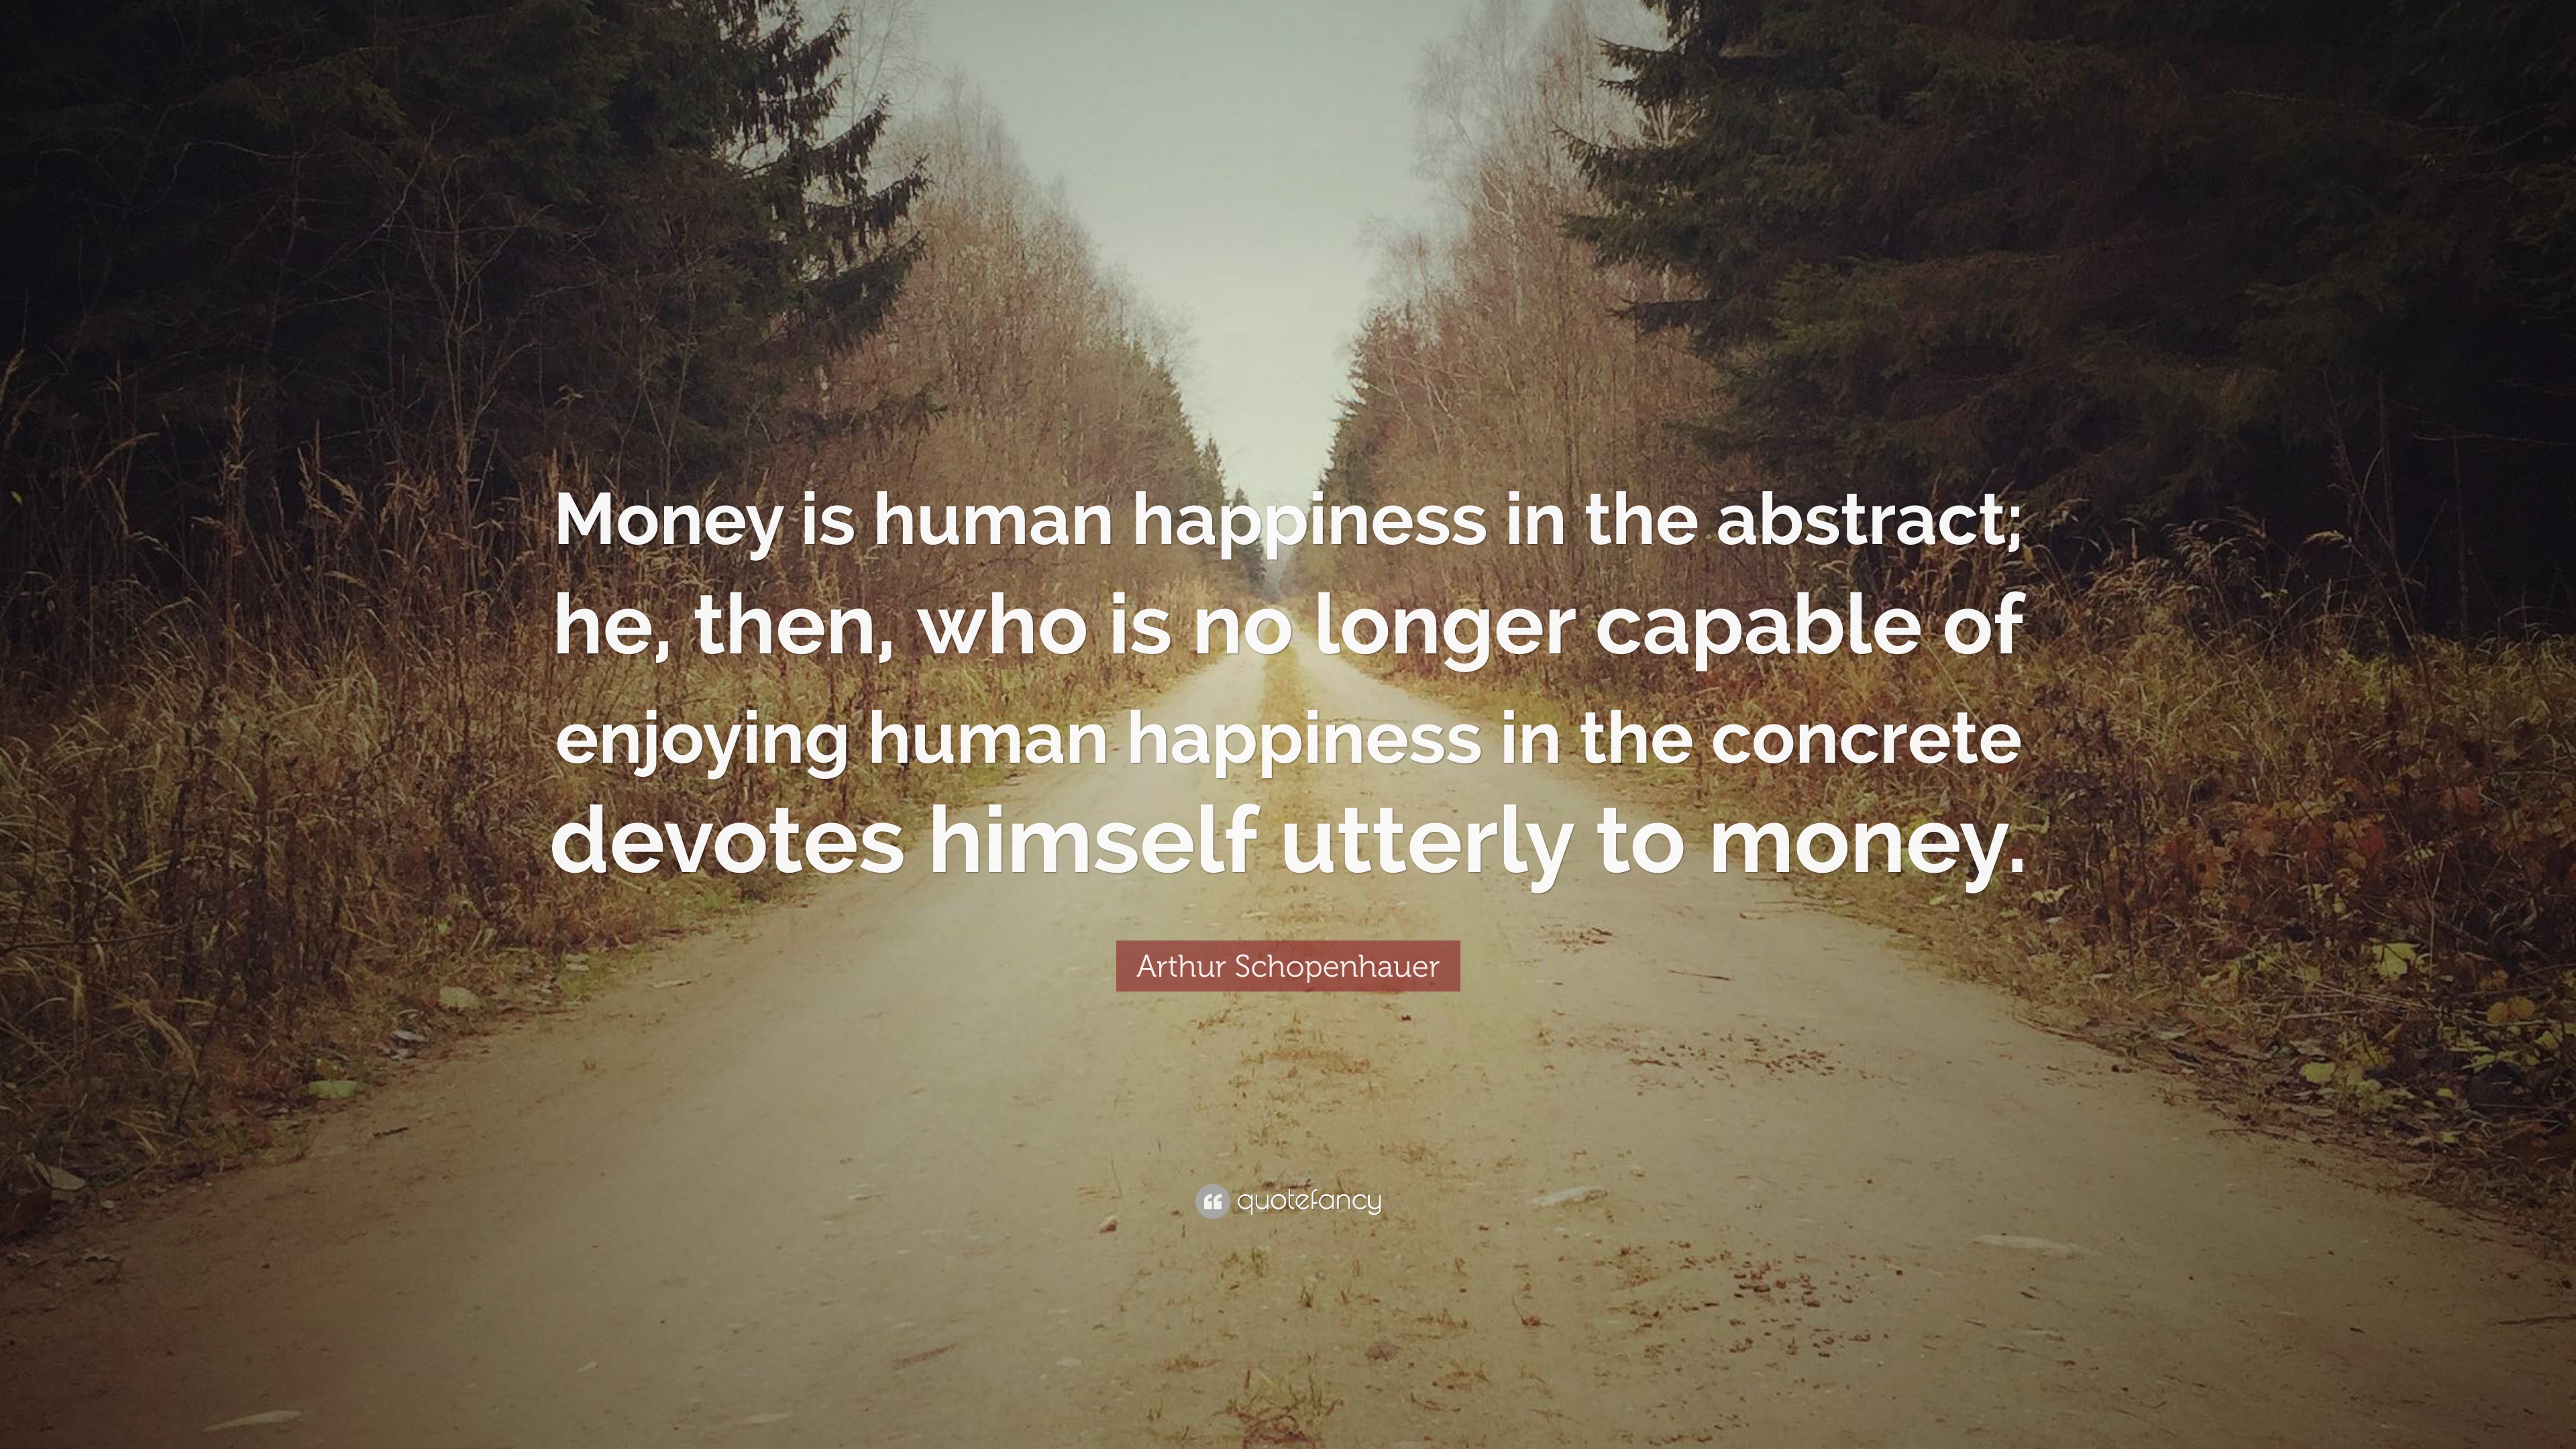 Arthur Schopenhauer Quote: “Money is human happiness in